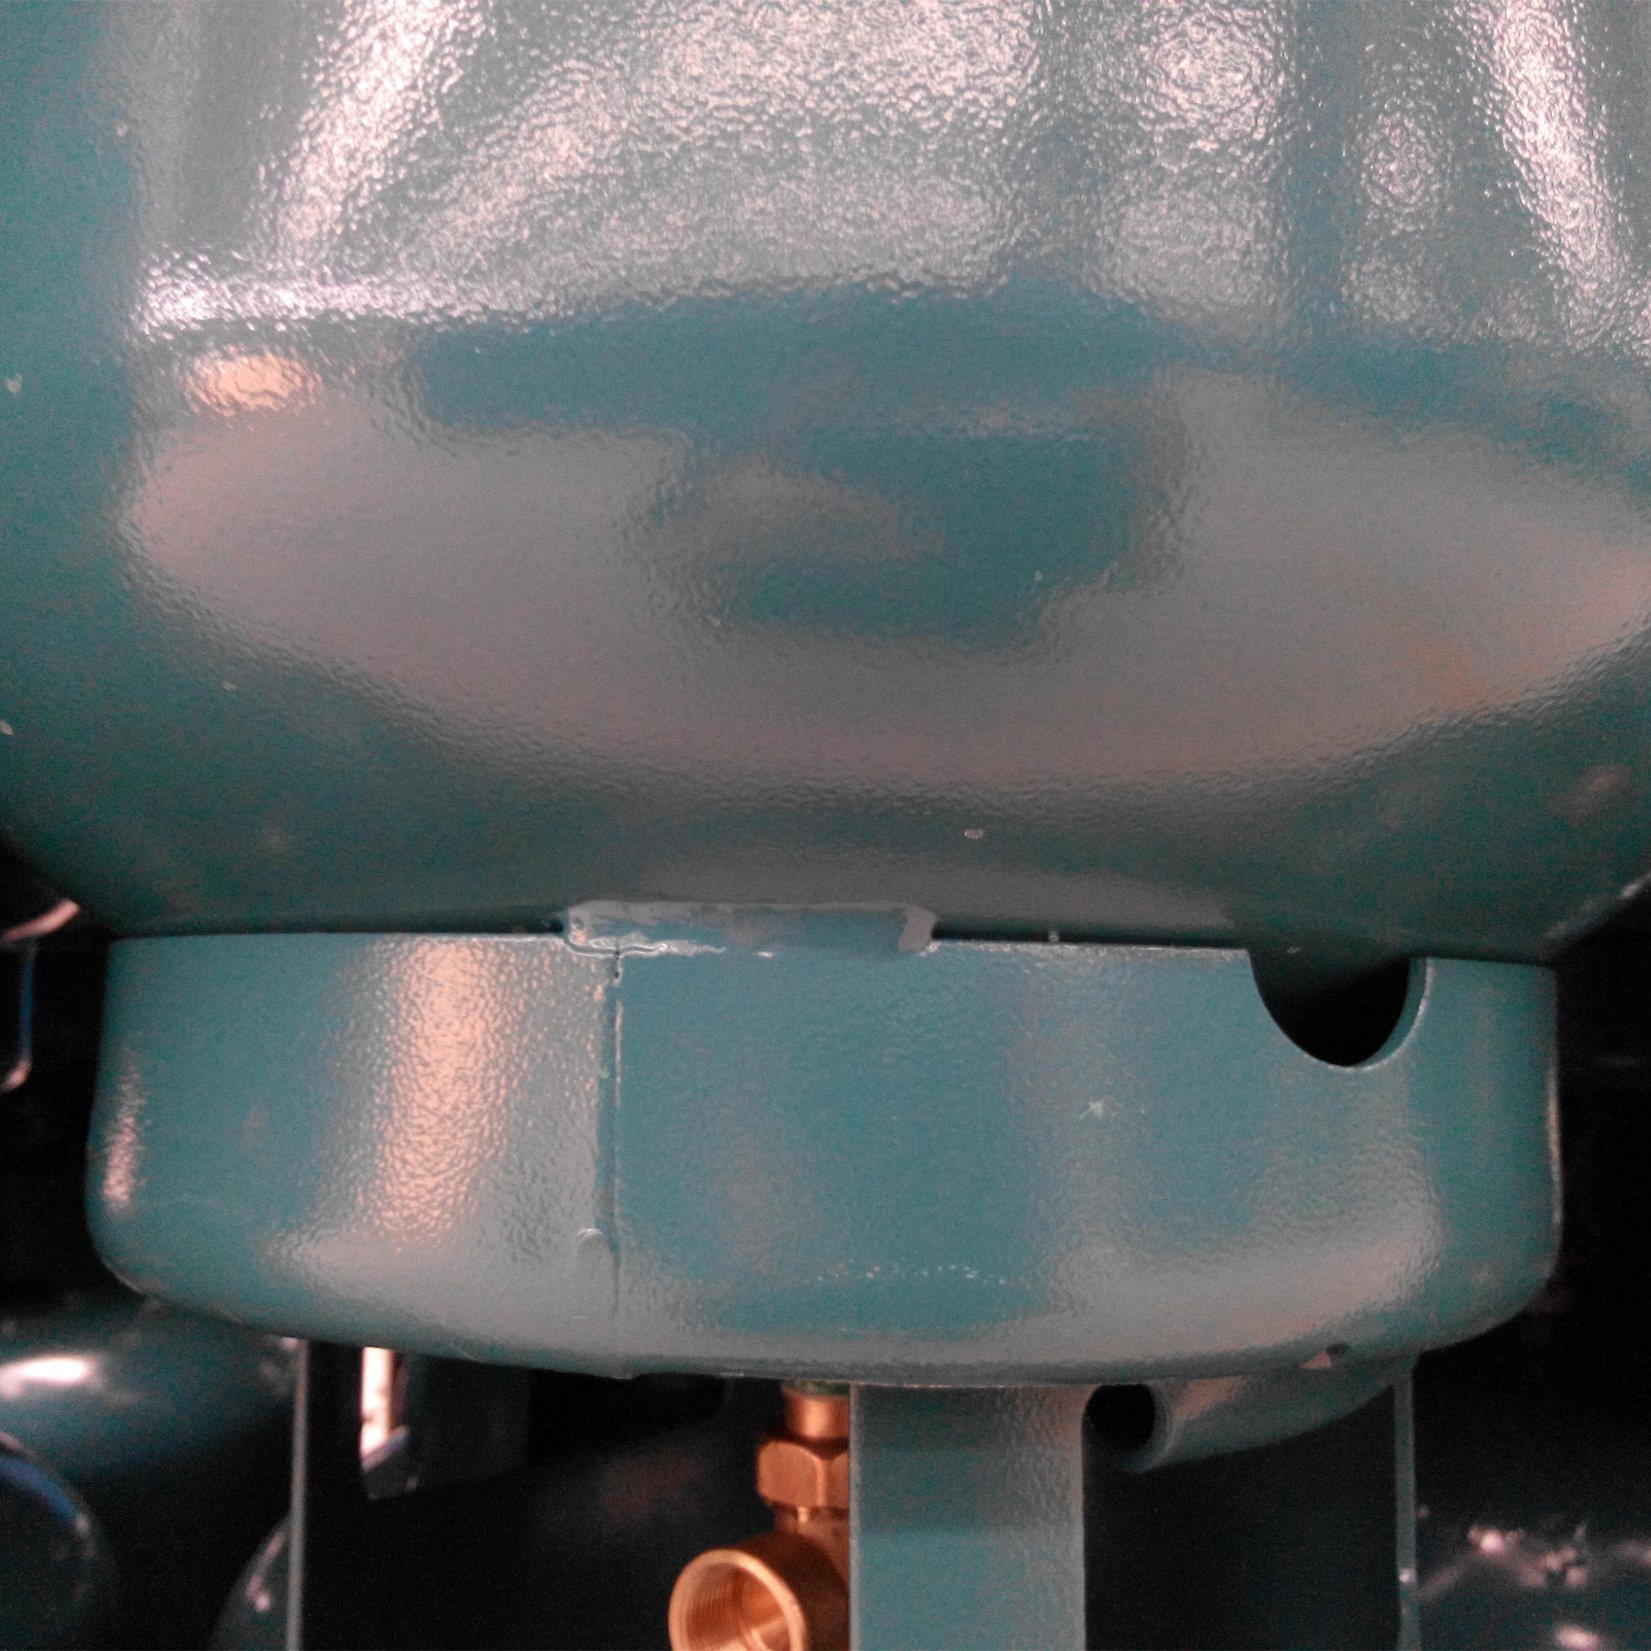 LPG Gas Cylinder Manufacturing Equipment Bottom Base Welding Machine